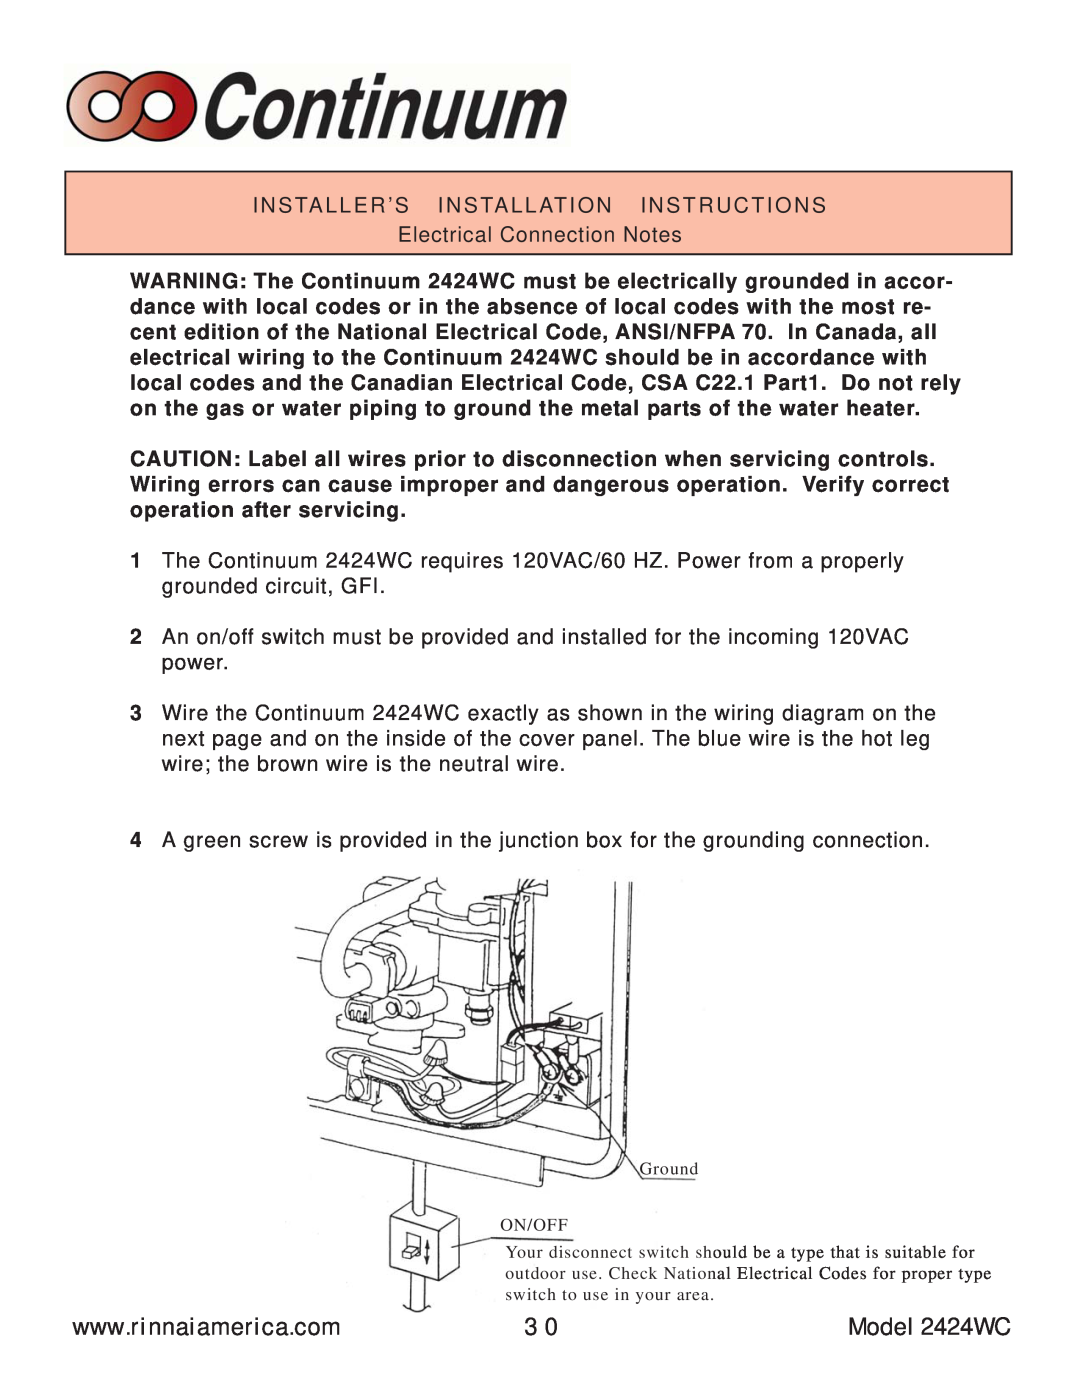 Rinnai manual Model 2424WC, Installer’S Installation Instructions 